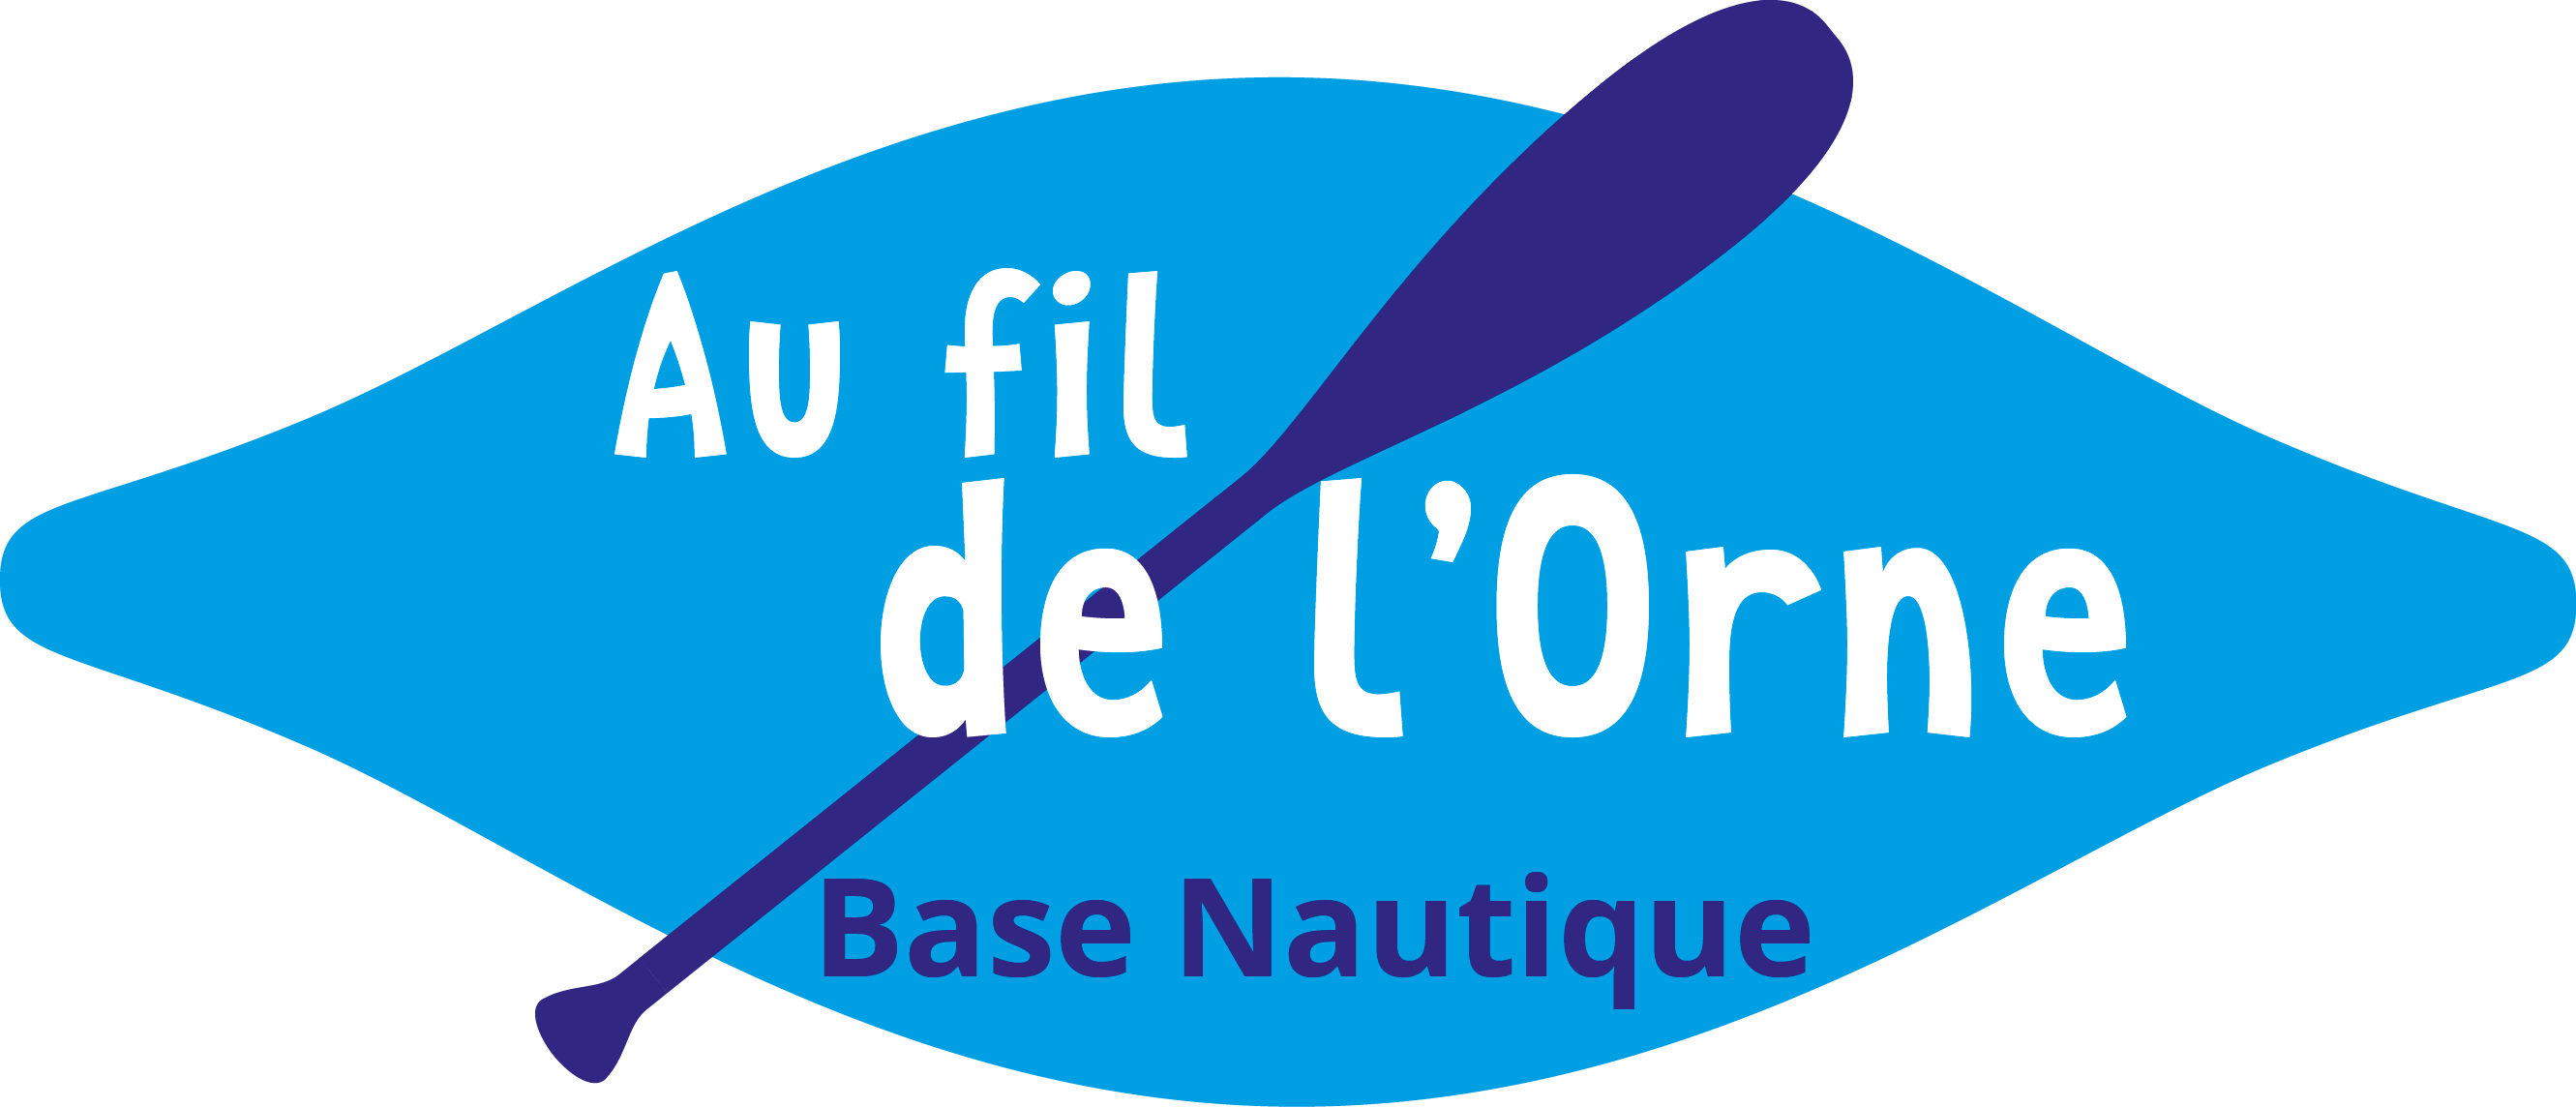 Au fil de l'Orne-logo-base nautique-location-loisir-tourisme-bateau électrique-pédalo-Caen-Calvados-Normandie